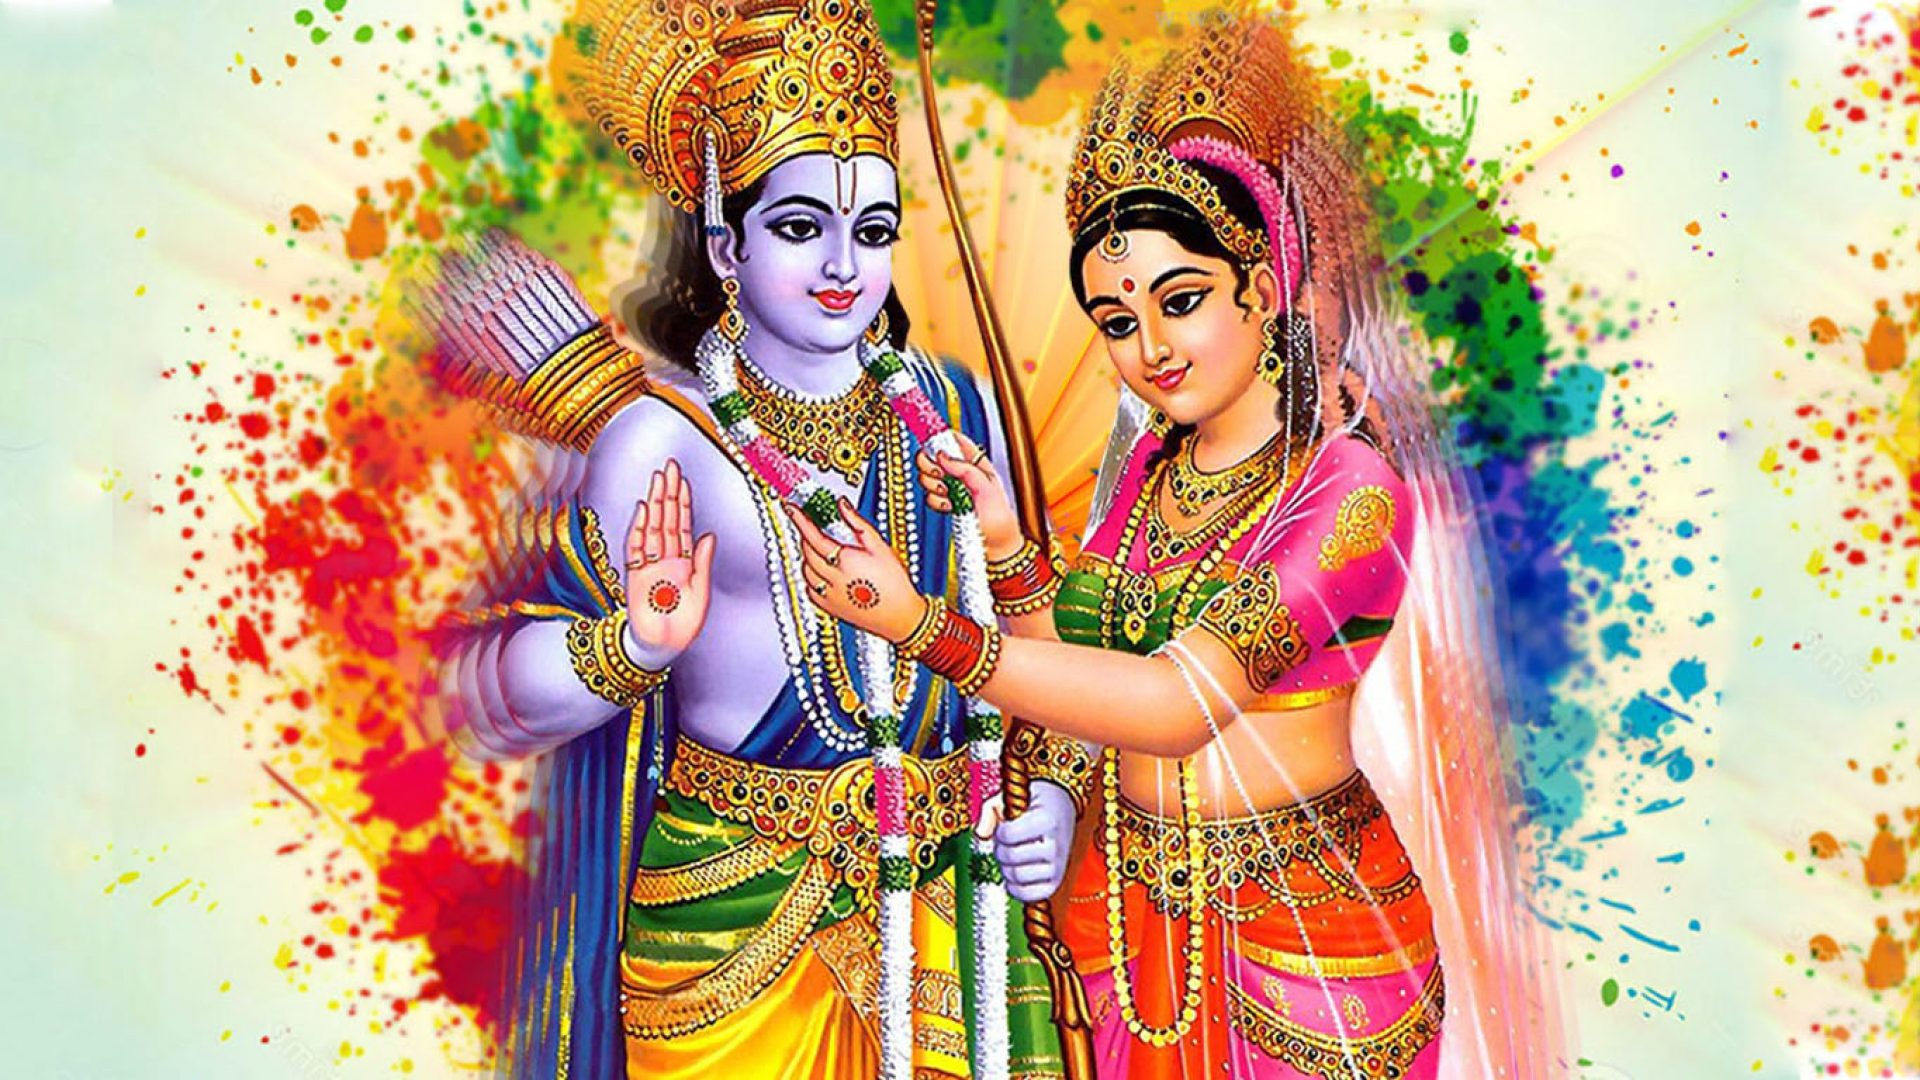 भगवान राम सीताको दर्शन गरि साउन २४ गते शनिवार (आज) को राशिफल हेनुहोस्